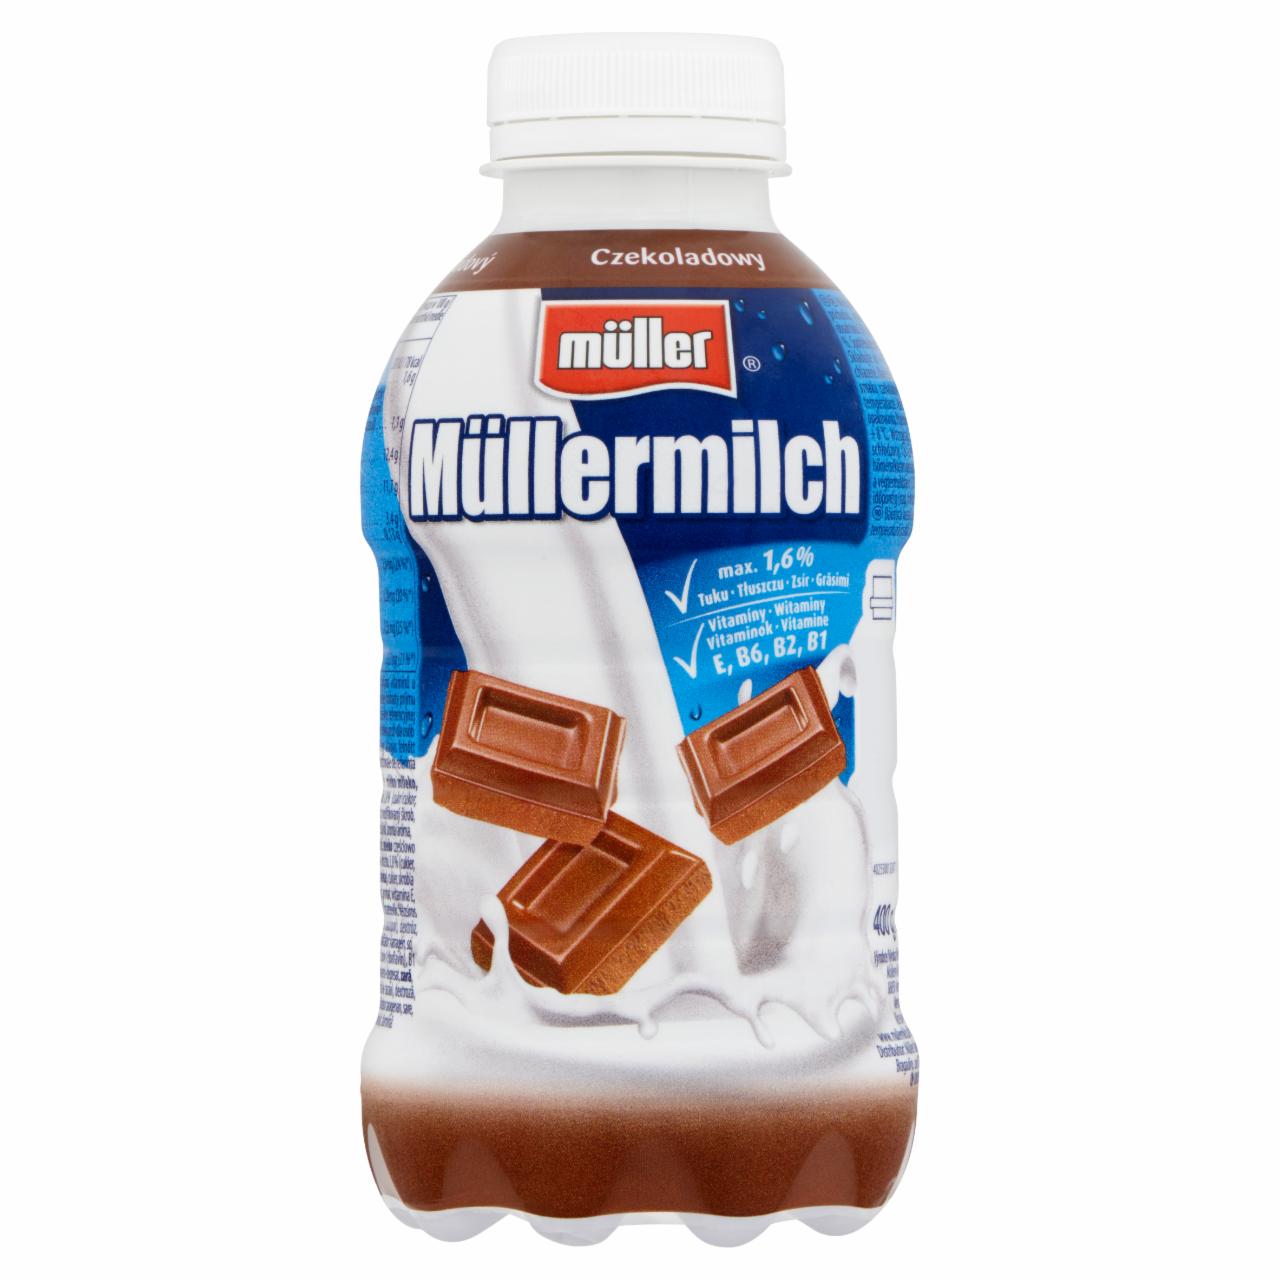 Képek - Müller Müllermilch csokoládé ízű zsírszegény tejital 400 g